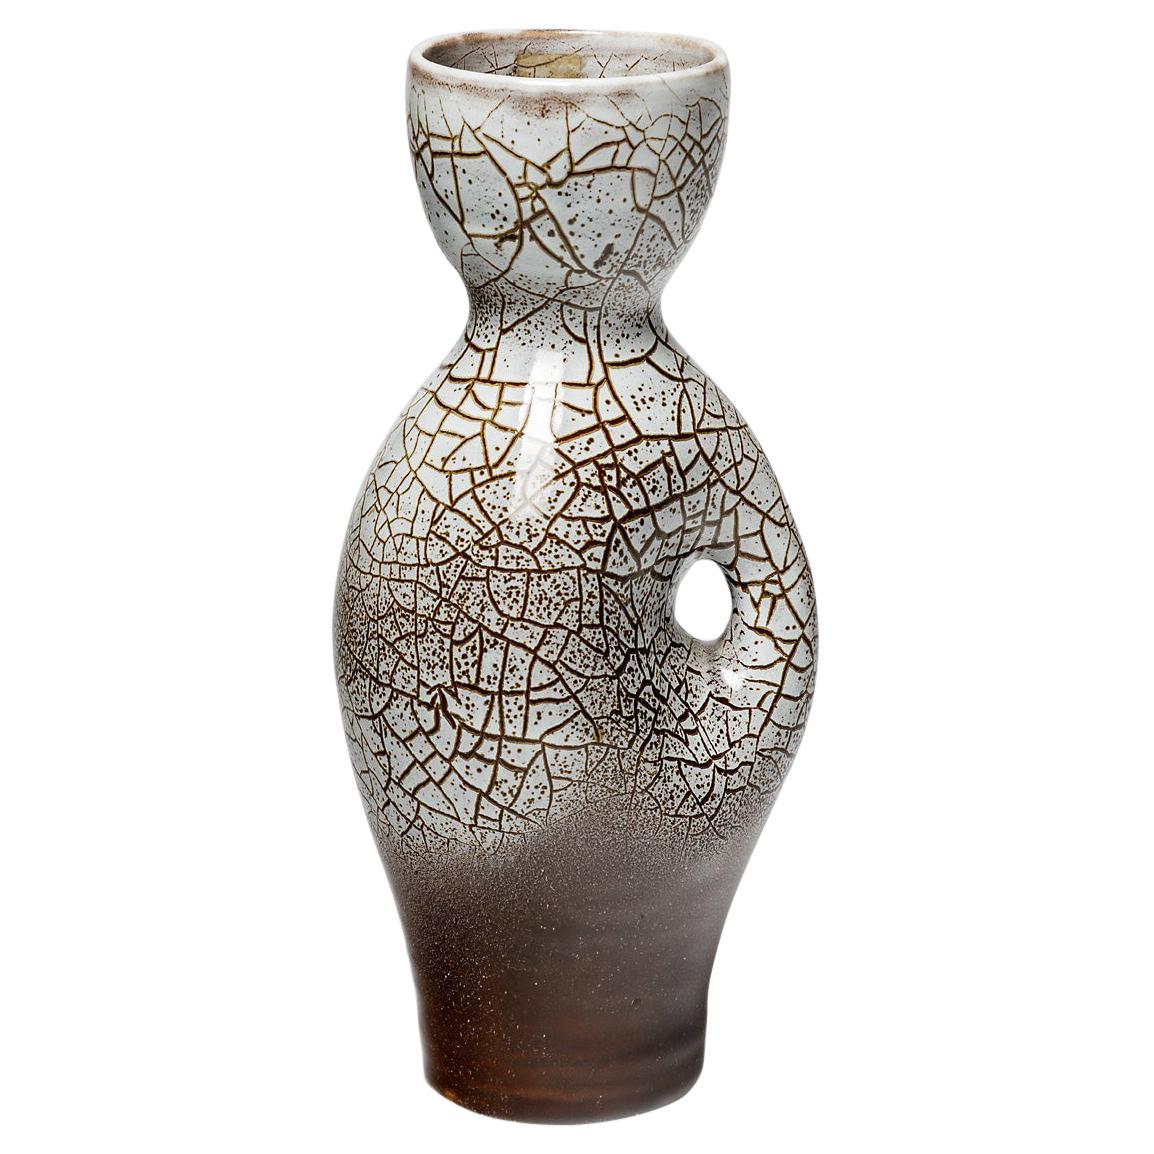 Pichet ou vase en céramique vintage blanc et marron par Accolay Potters French